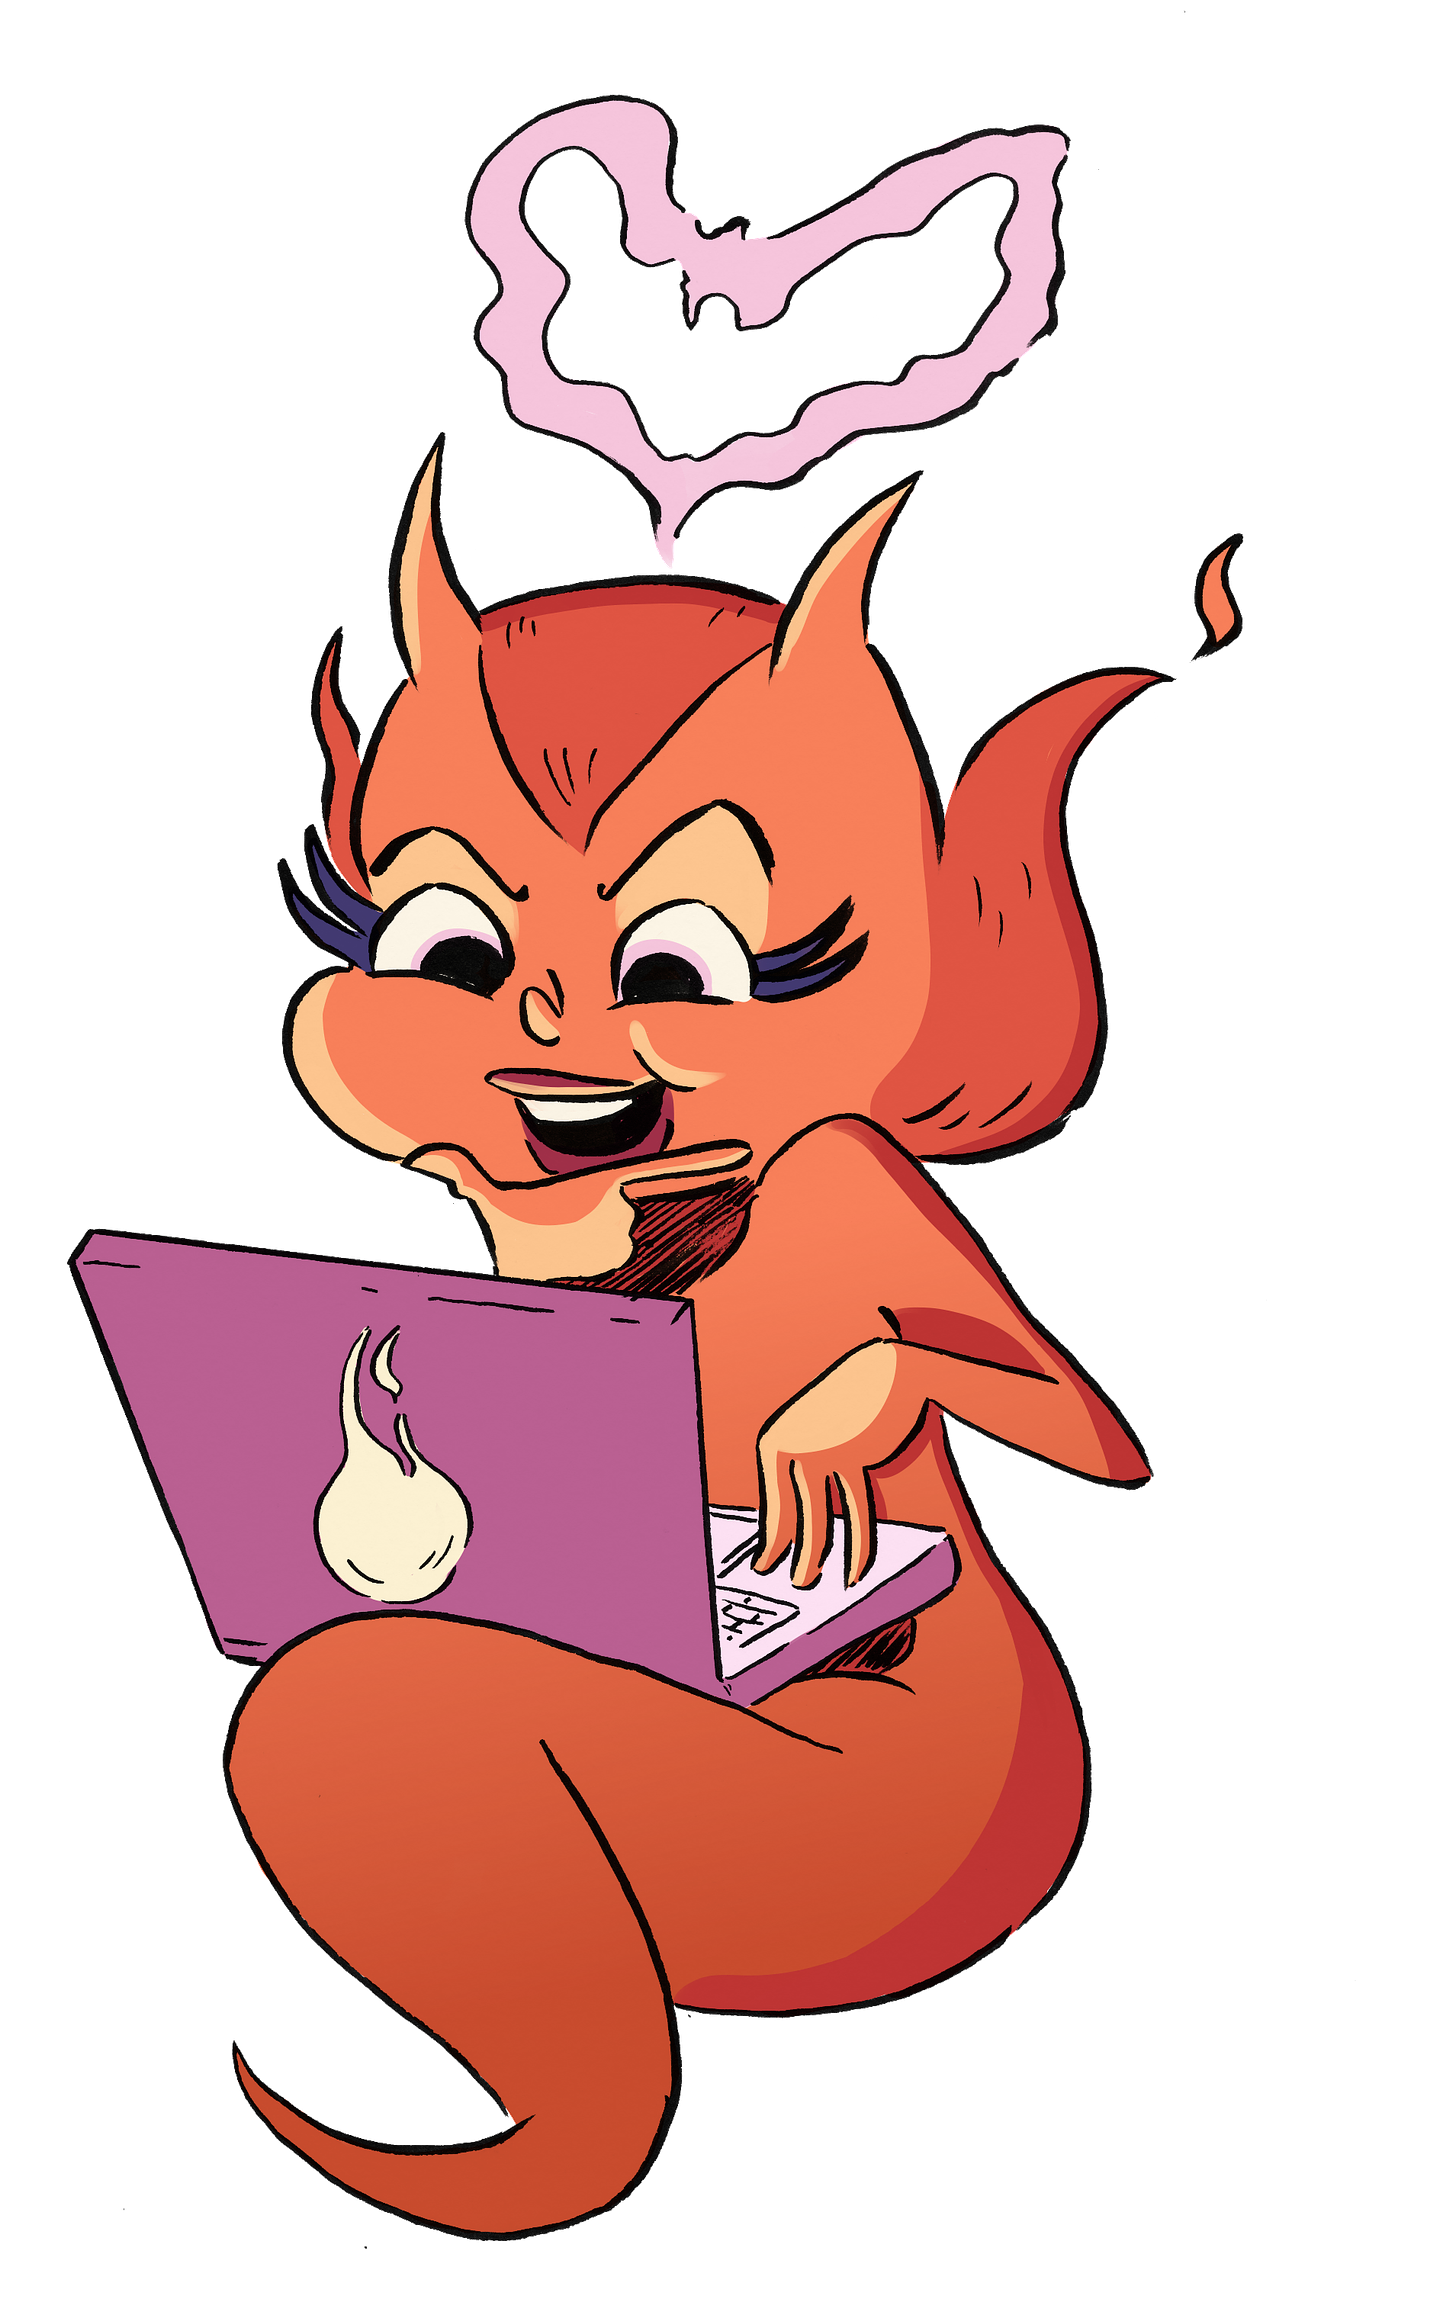 Evie, a cute fiery devil, on her laptop